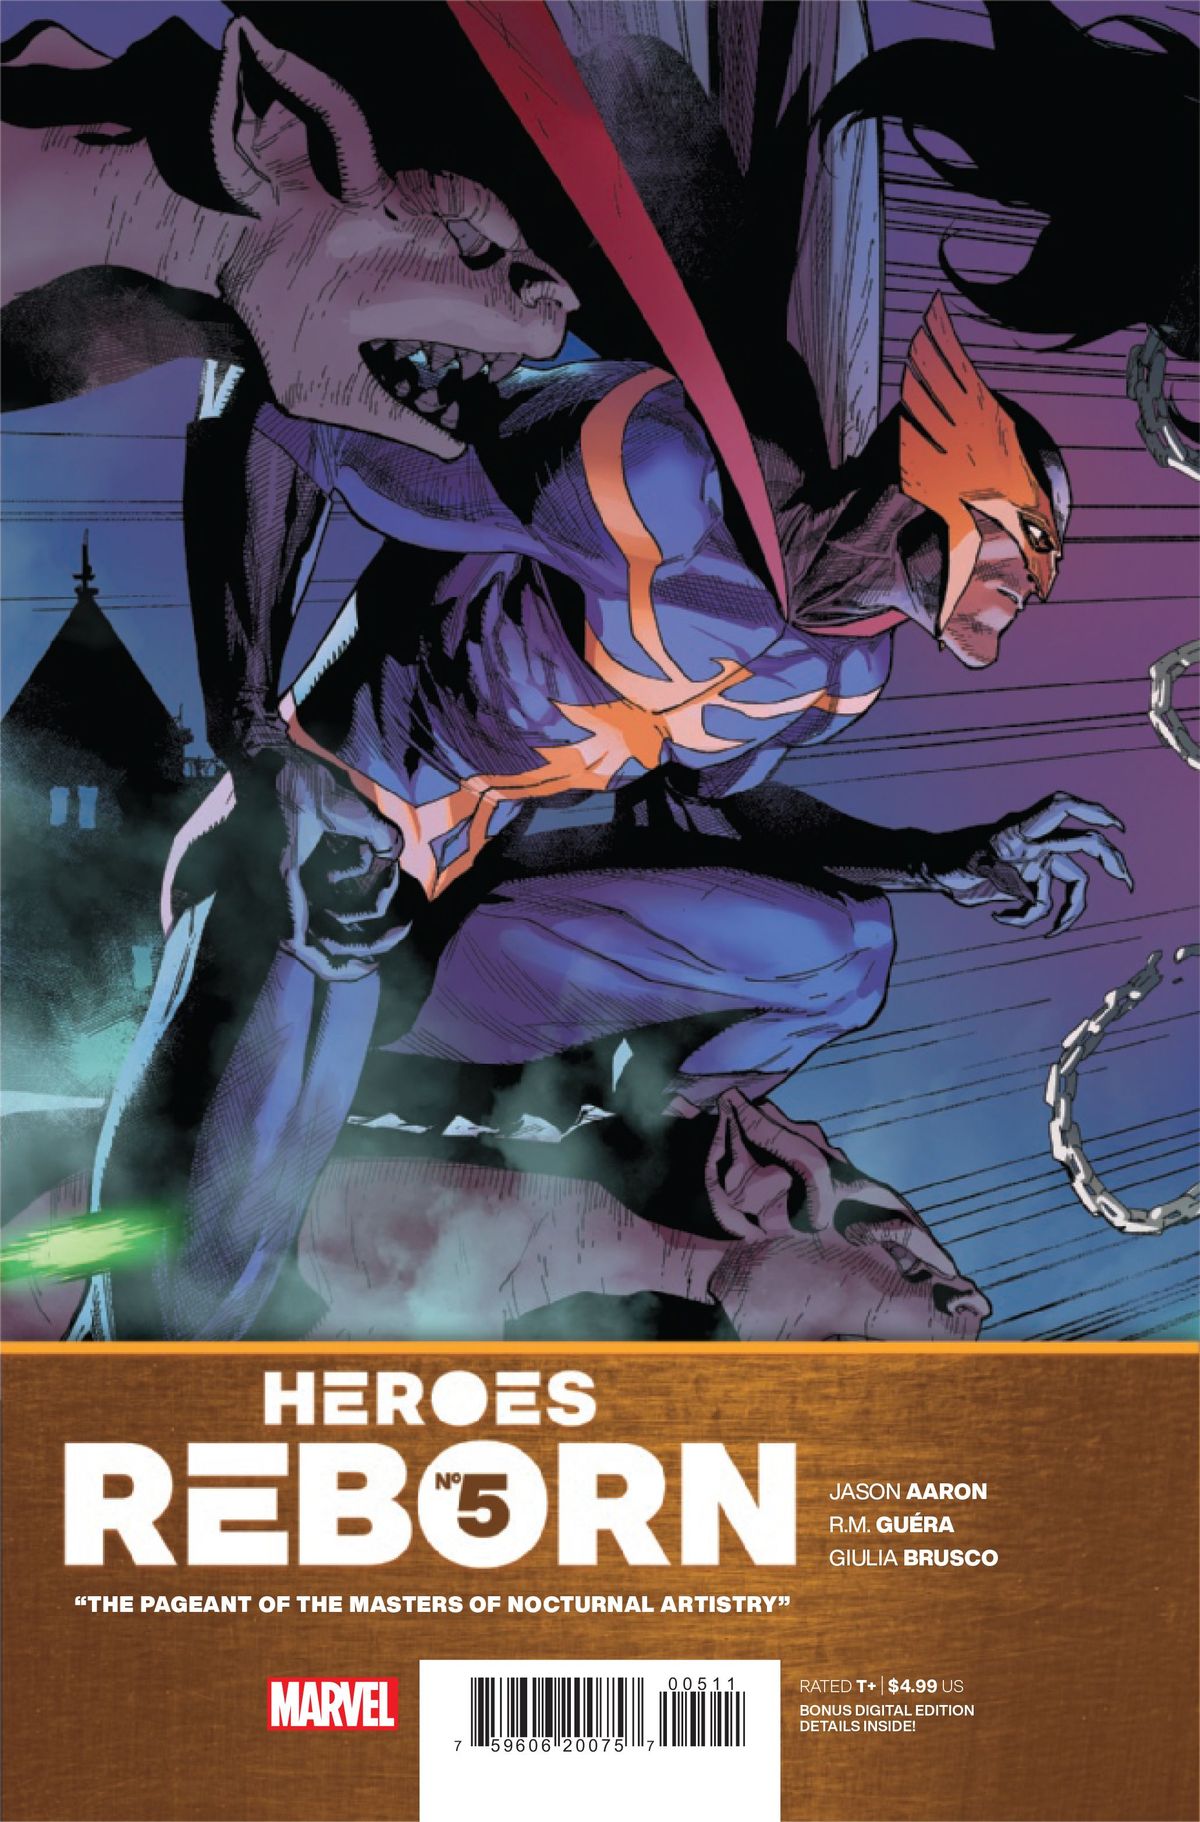 PREVIEW: Heroes Reborn #5 herschept Kravens laatste jacht met een Batman-twist (exclusief)